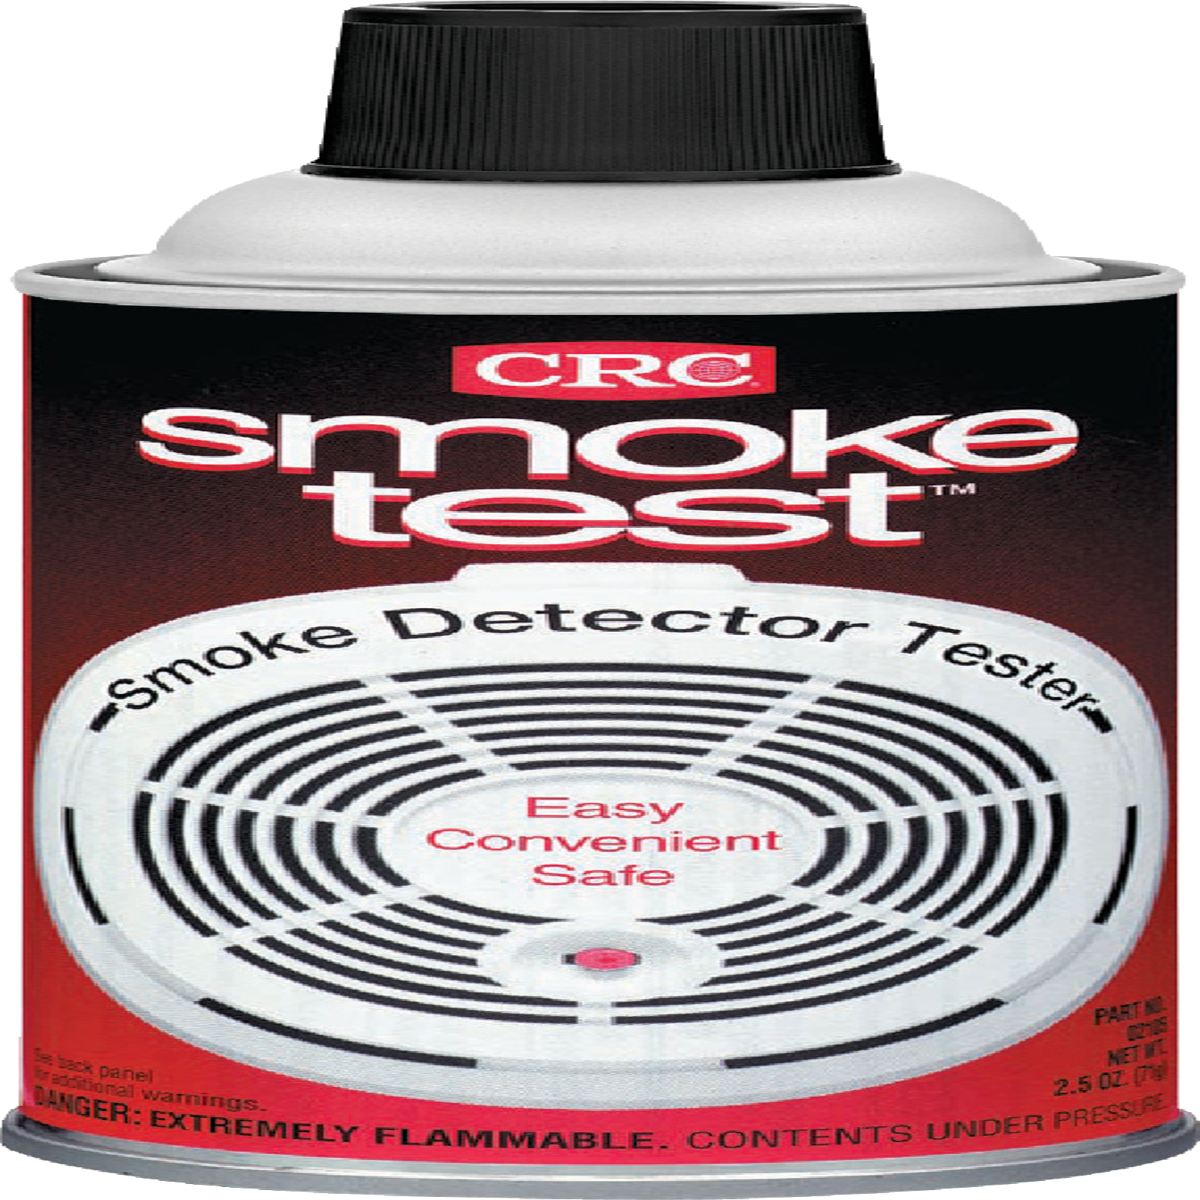 Smoke Detector Tester